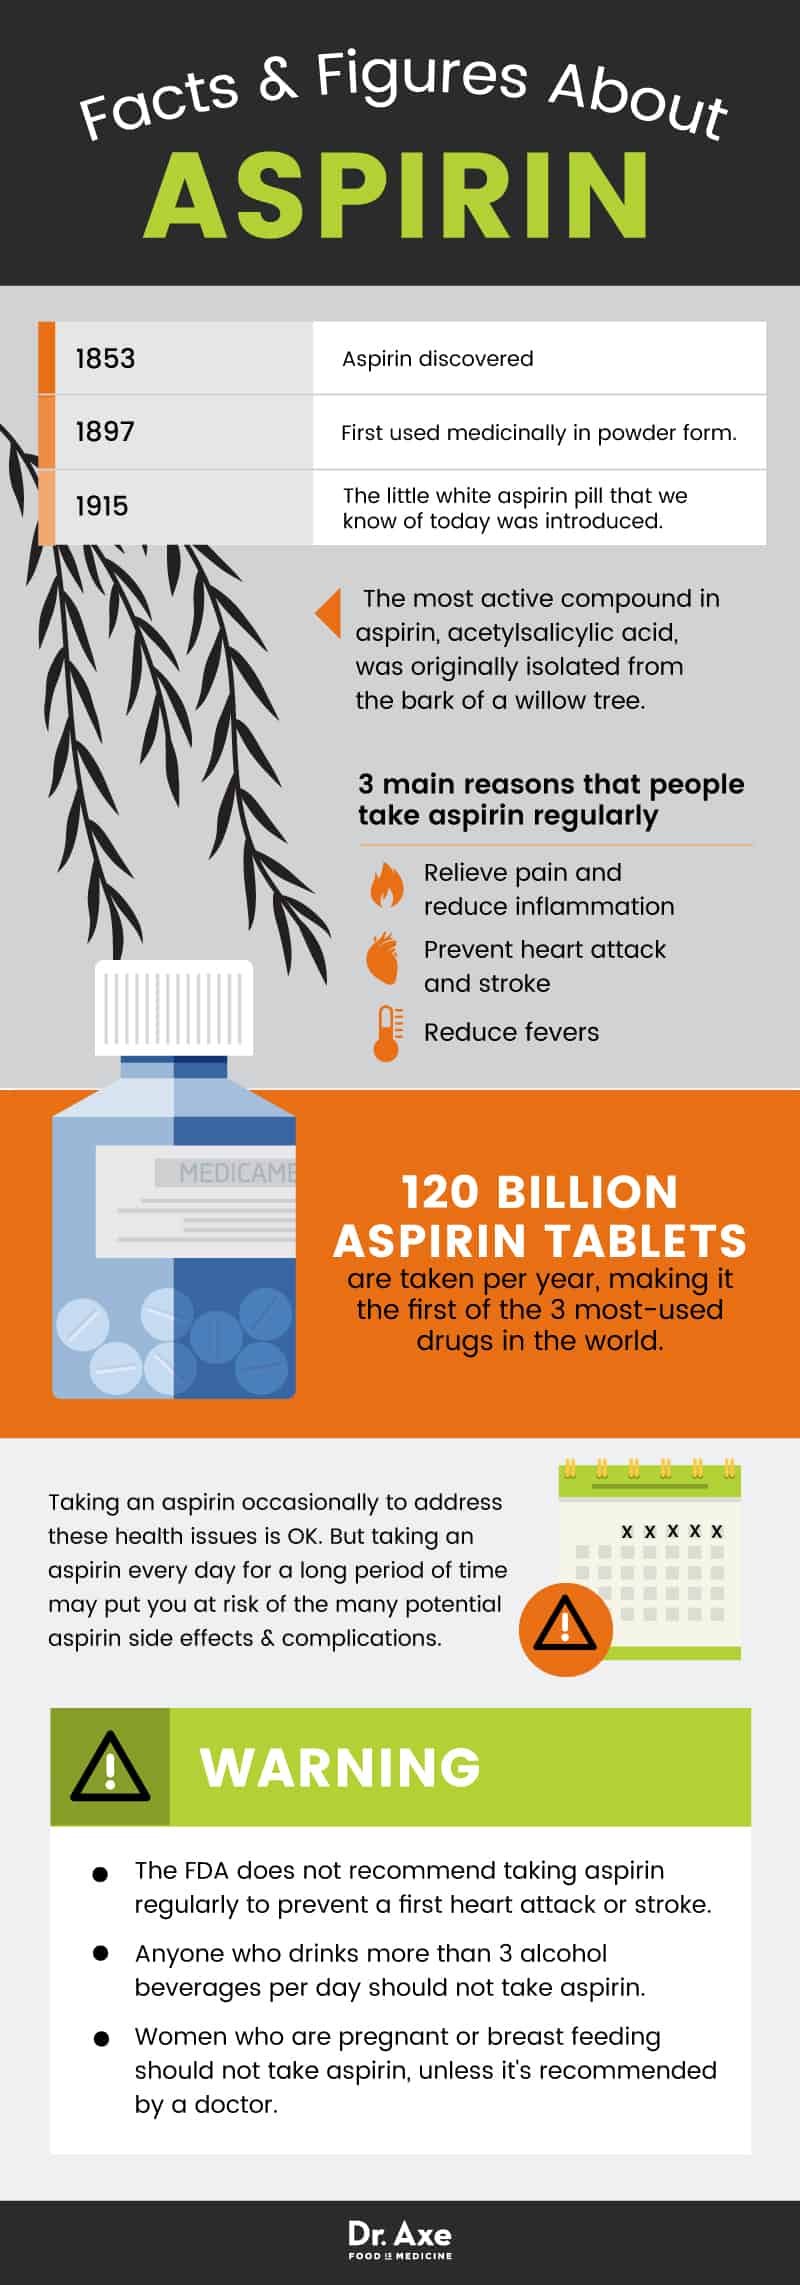 Efectos secundarios de la aspirina: datos sobre la aspirina - Dr. Axe